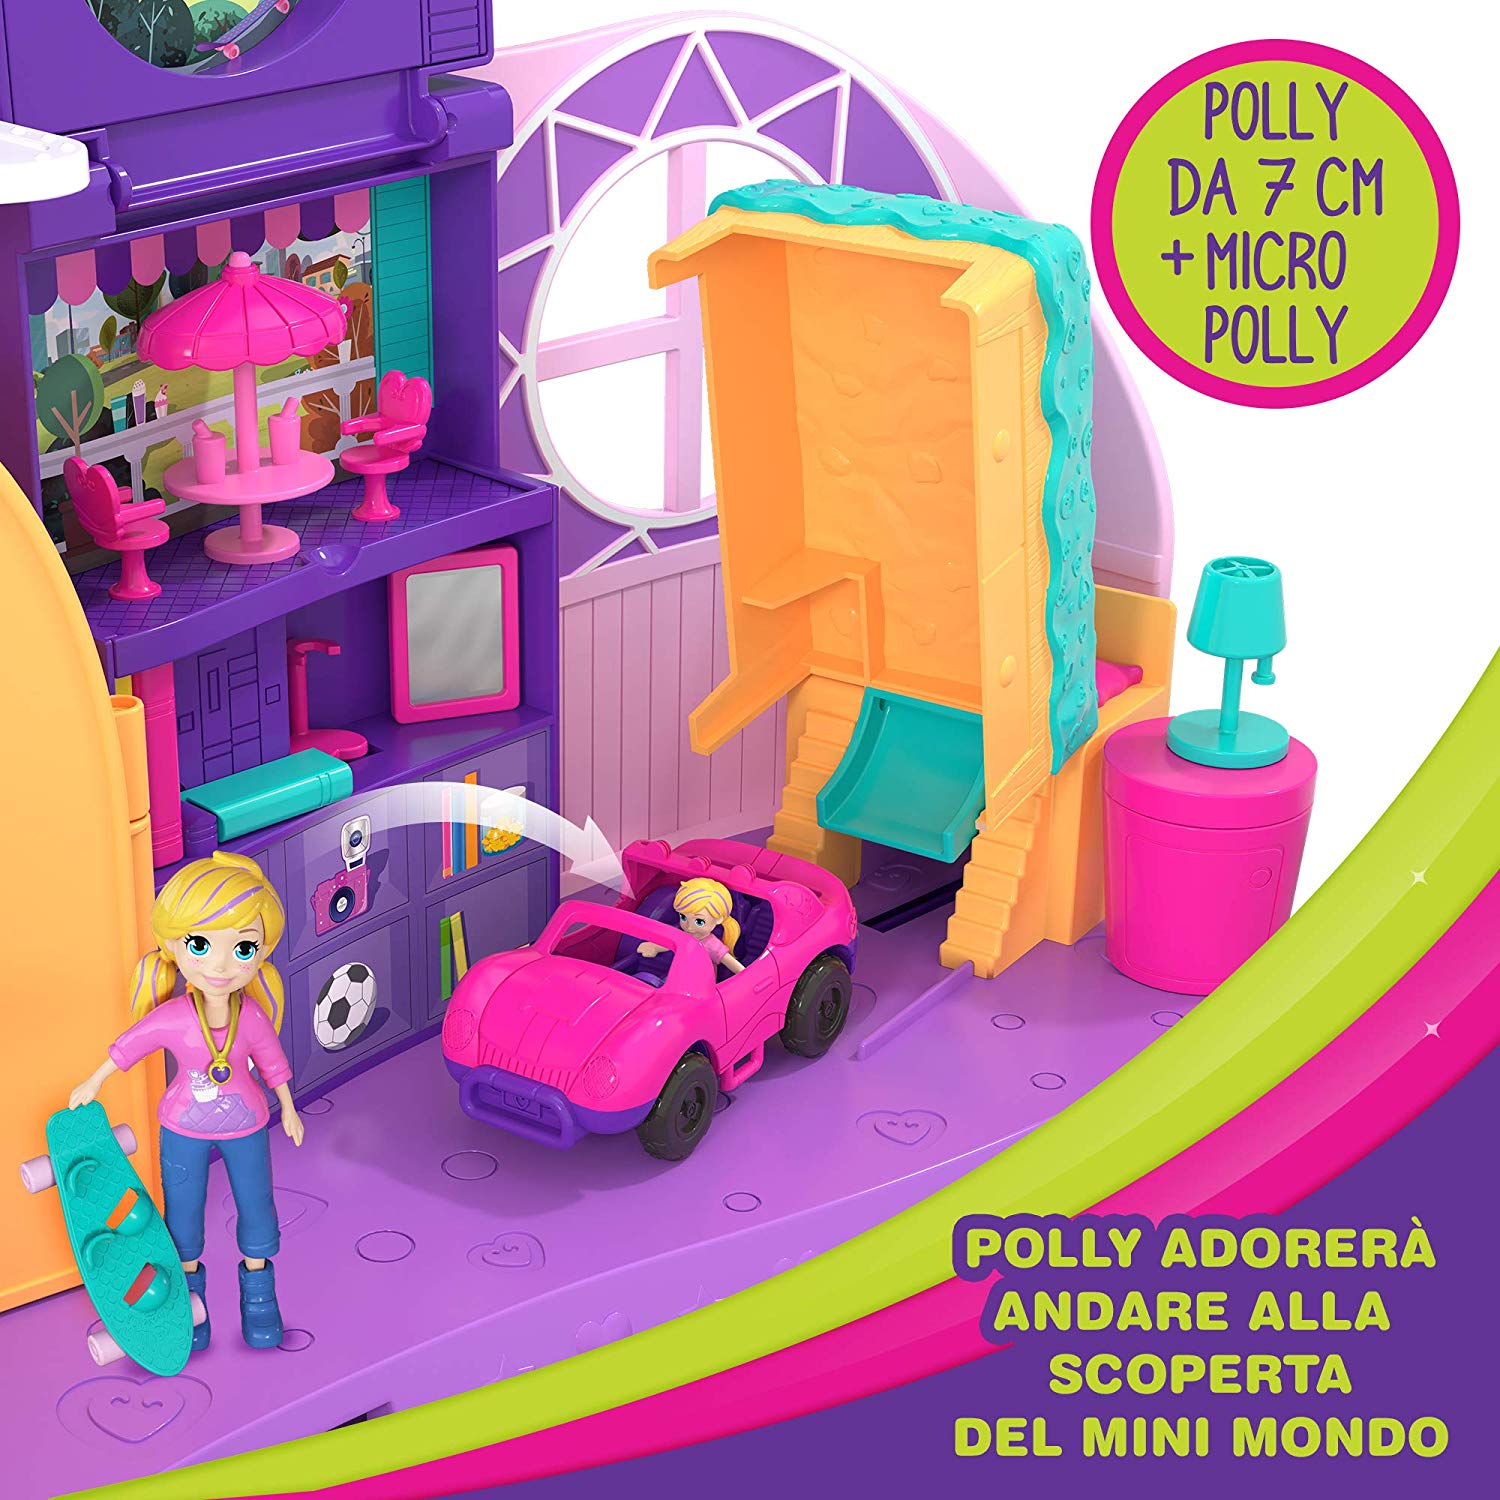 Polly Pocket giocattoli cofanetti - CAMERETTA DI POLLY